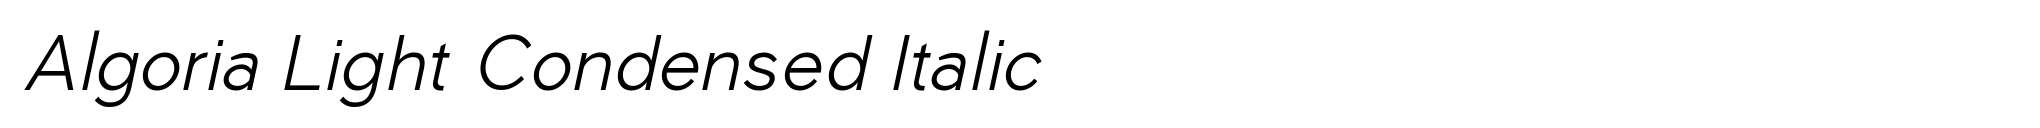 Algoria Light Condensed Italic image